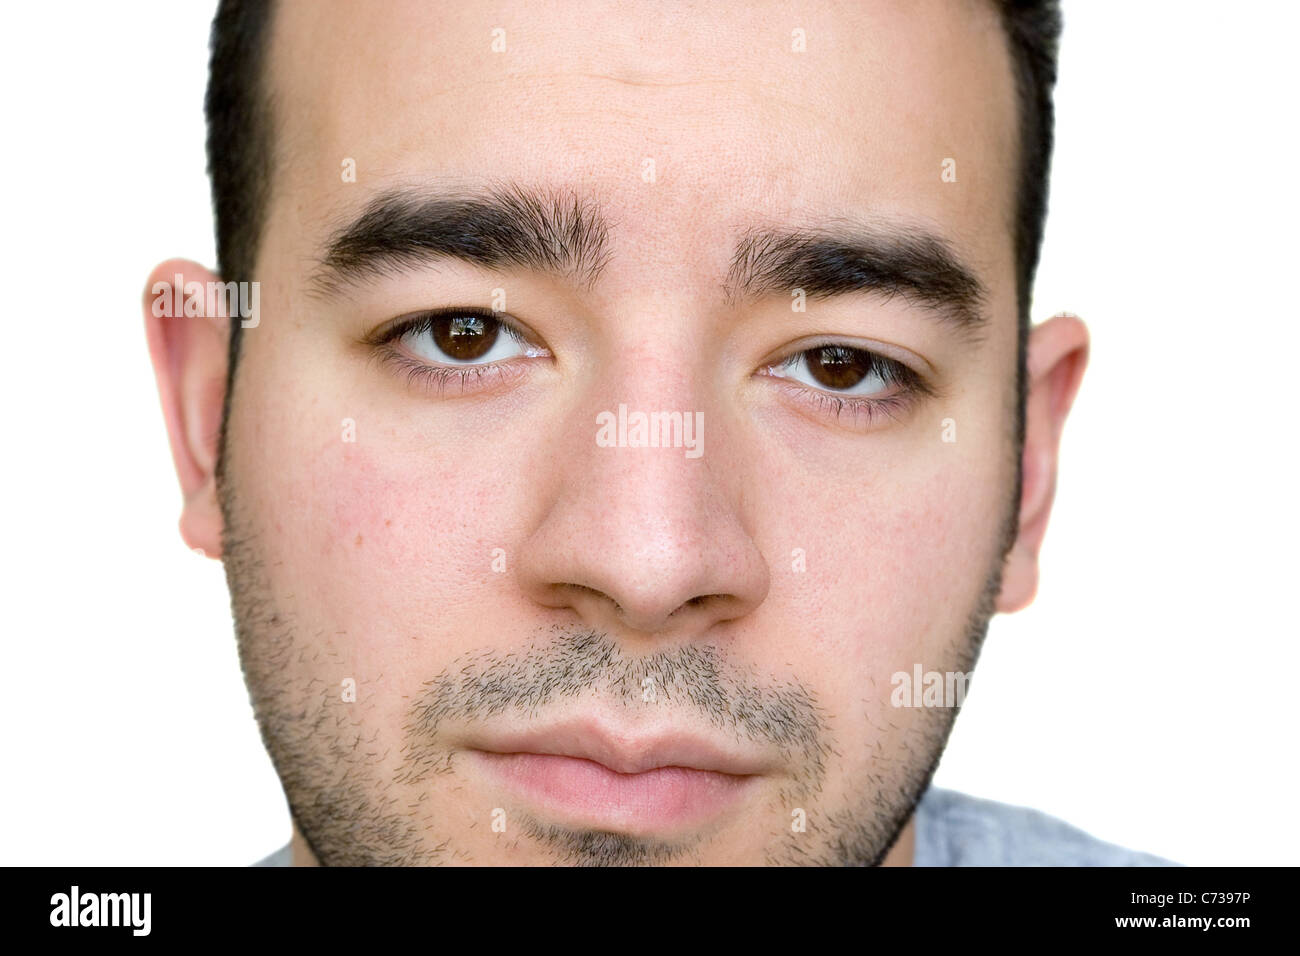 Eine Nahaufnahme von einem jungen Mann mit einem sehr ernsten Blick auf seinem Gesicht. Großes Exemplar für die Stirn. Stockfoto